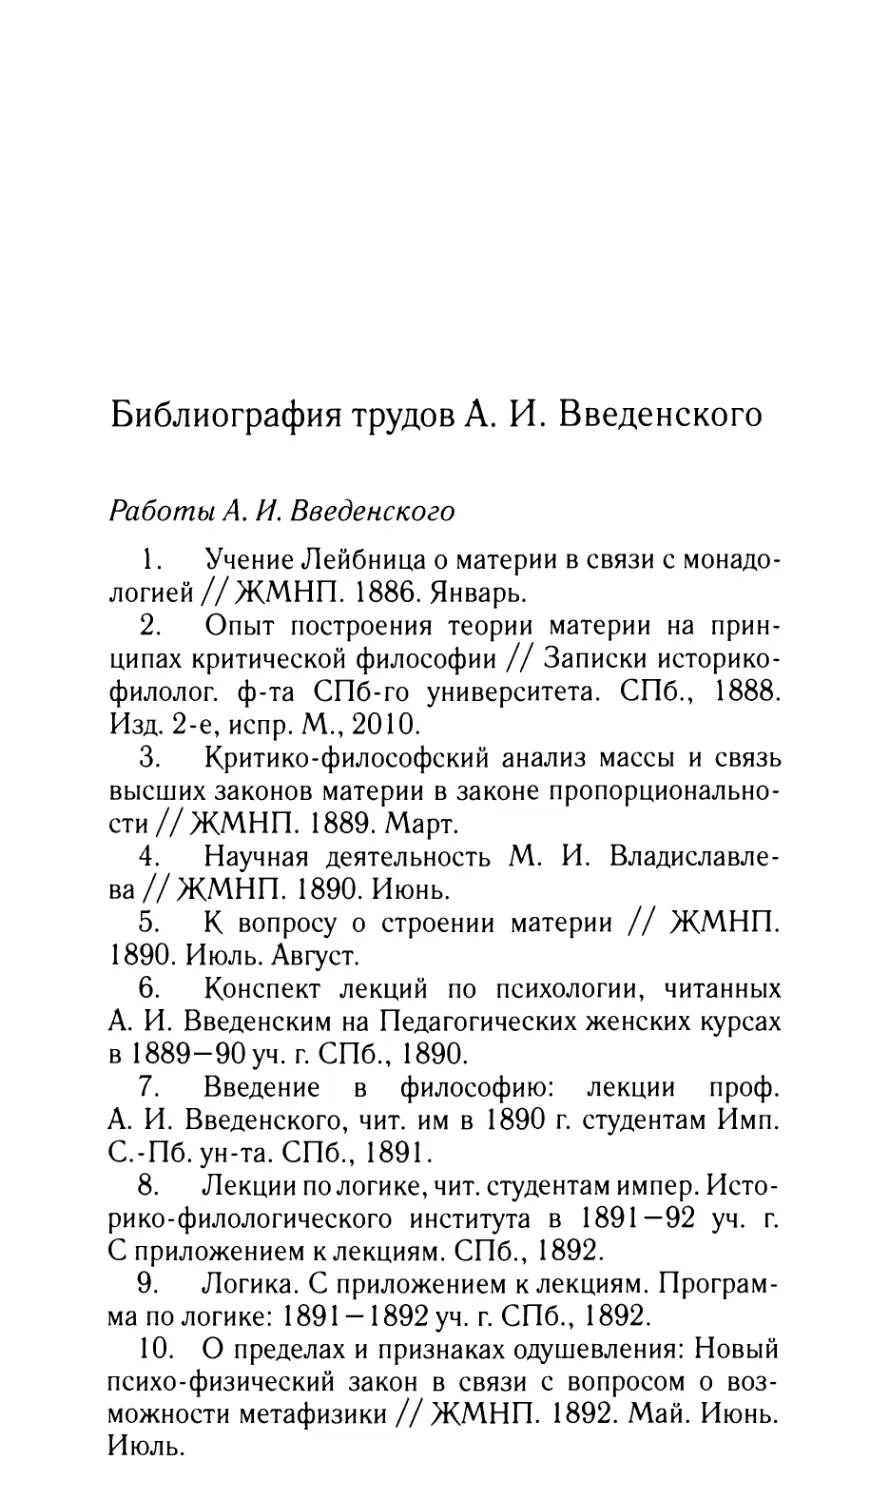 Библиография трудов А.И. Введенского